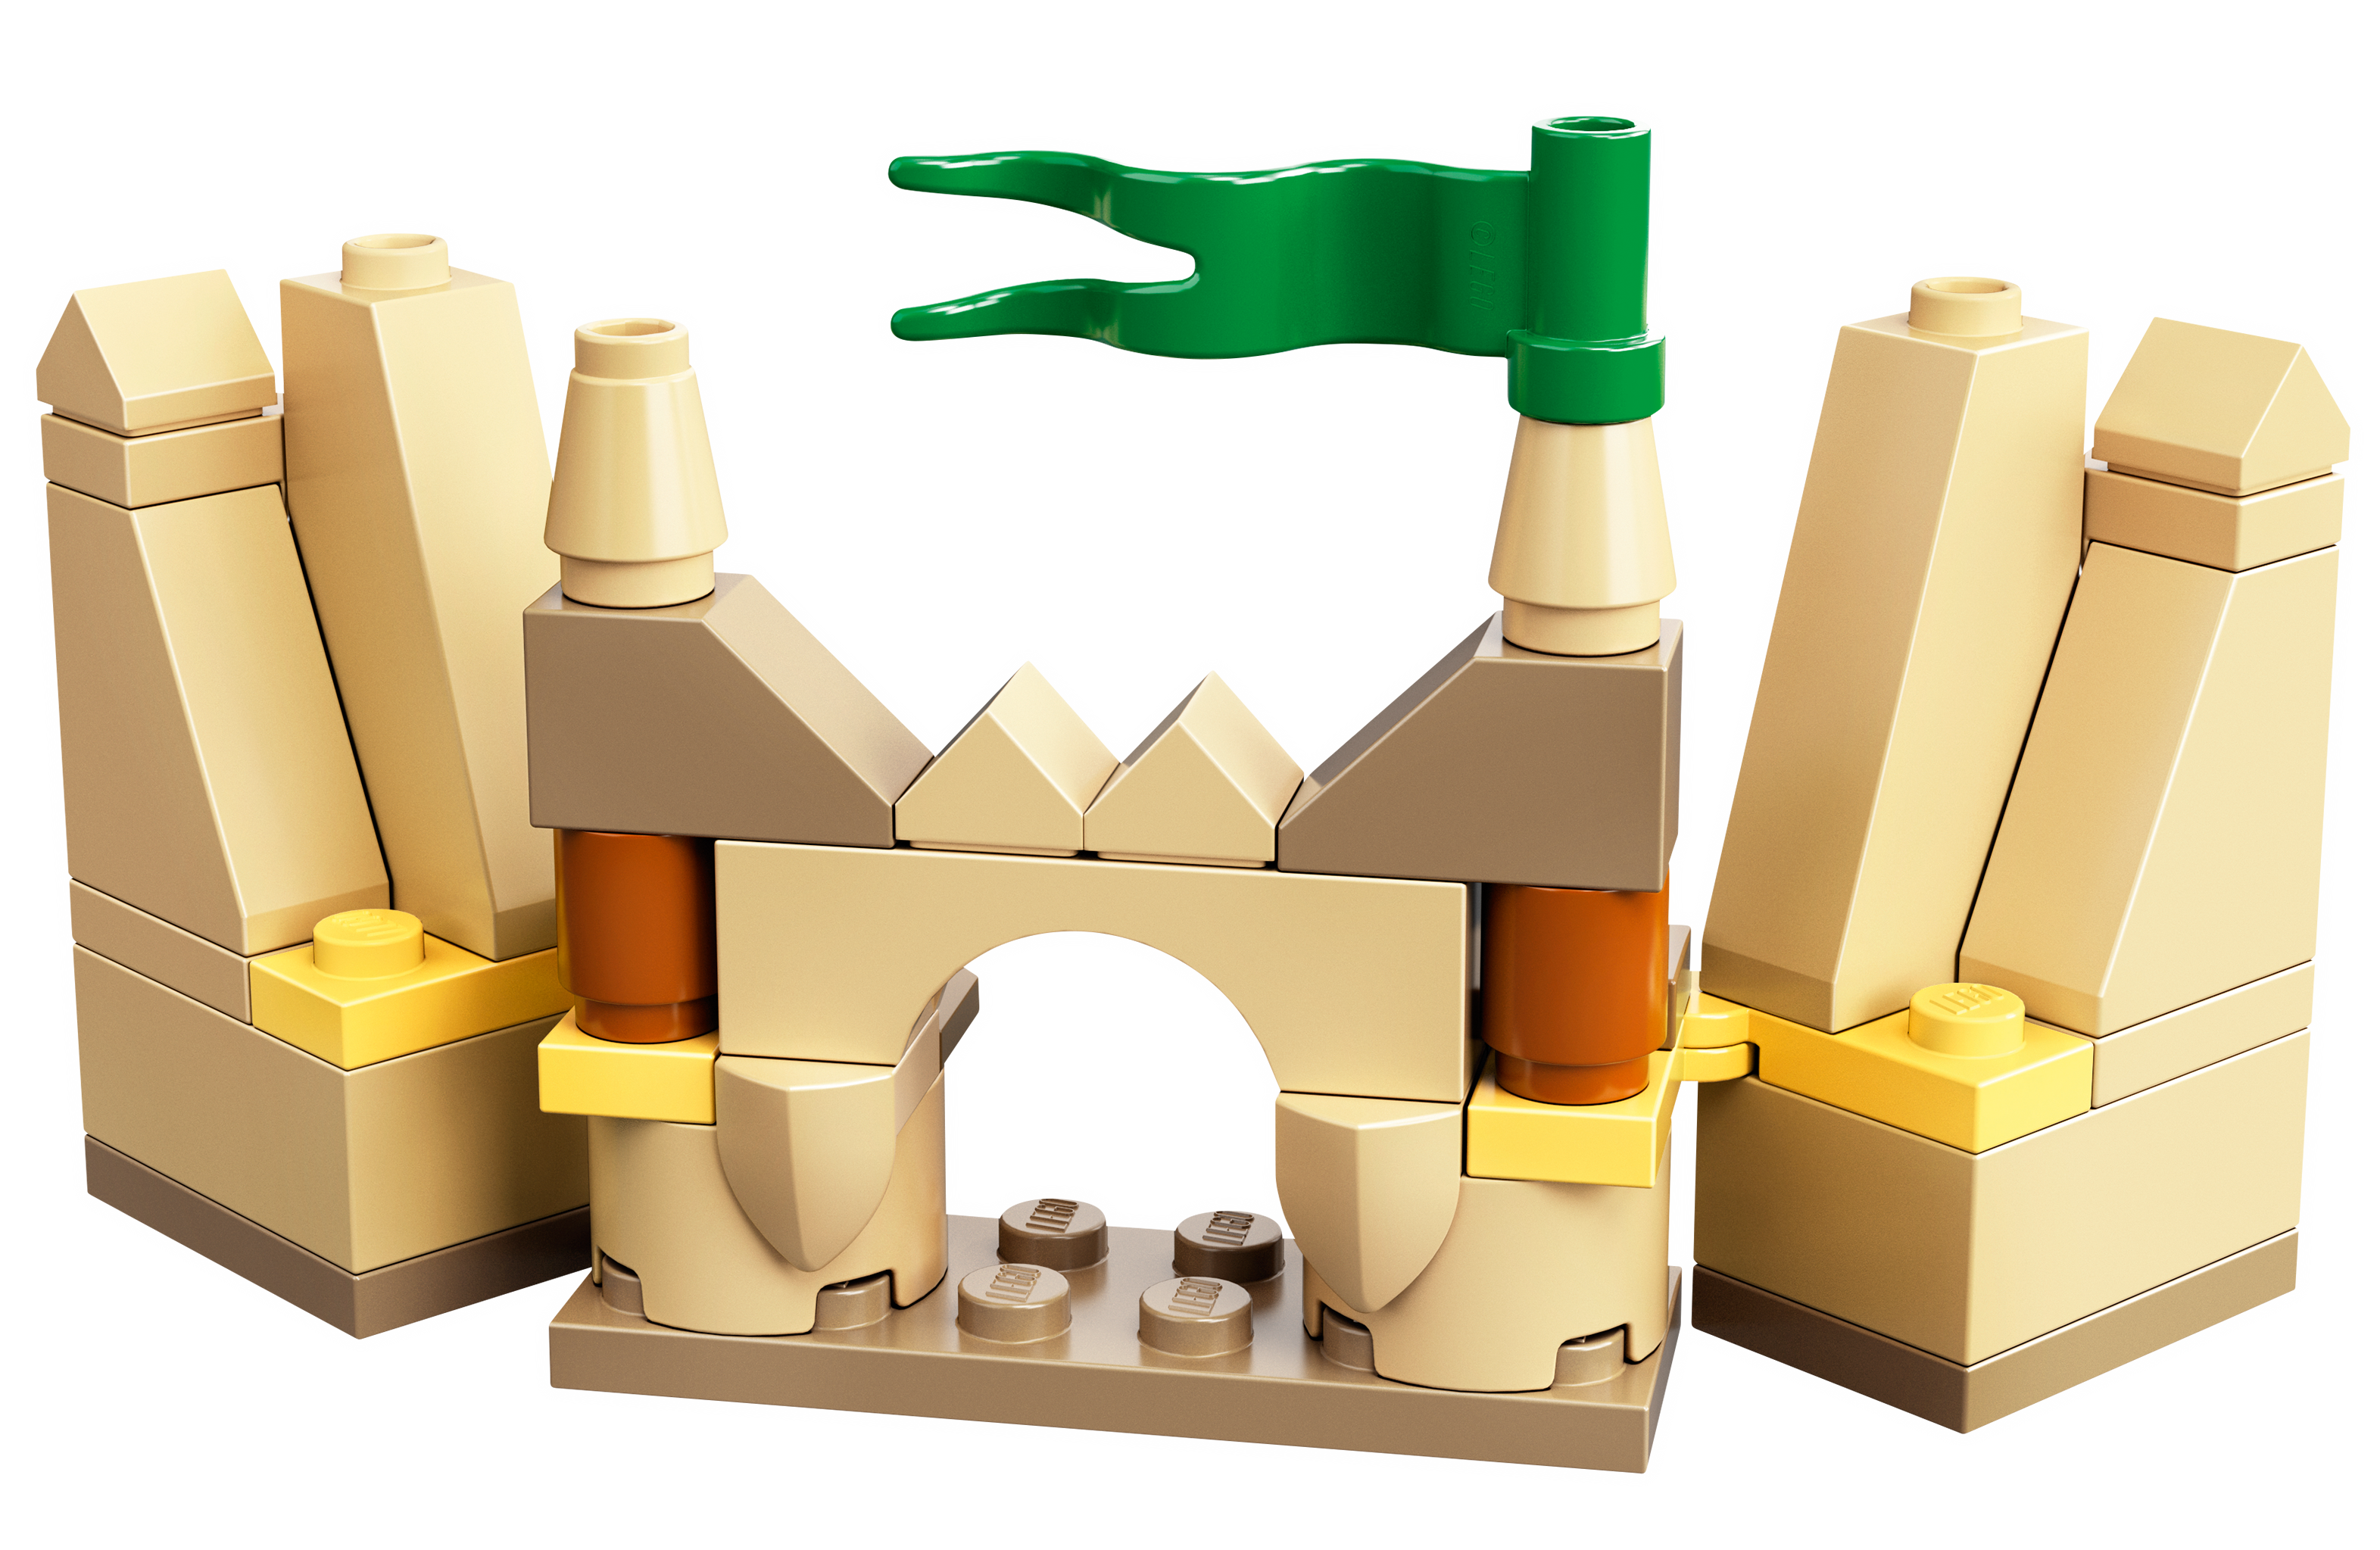 Lego 40411 1 en 12-BUILDING SET VIP Exclusive Brand New! 